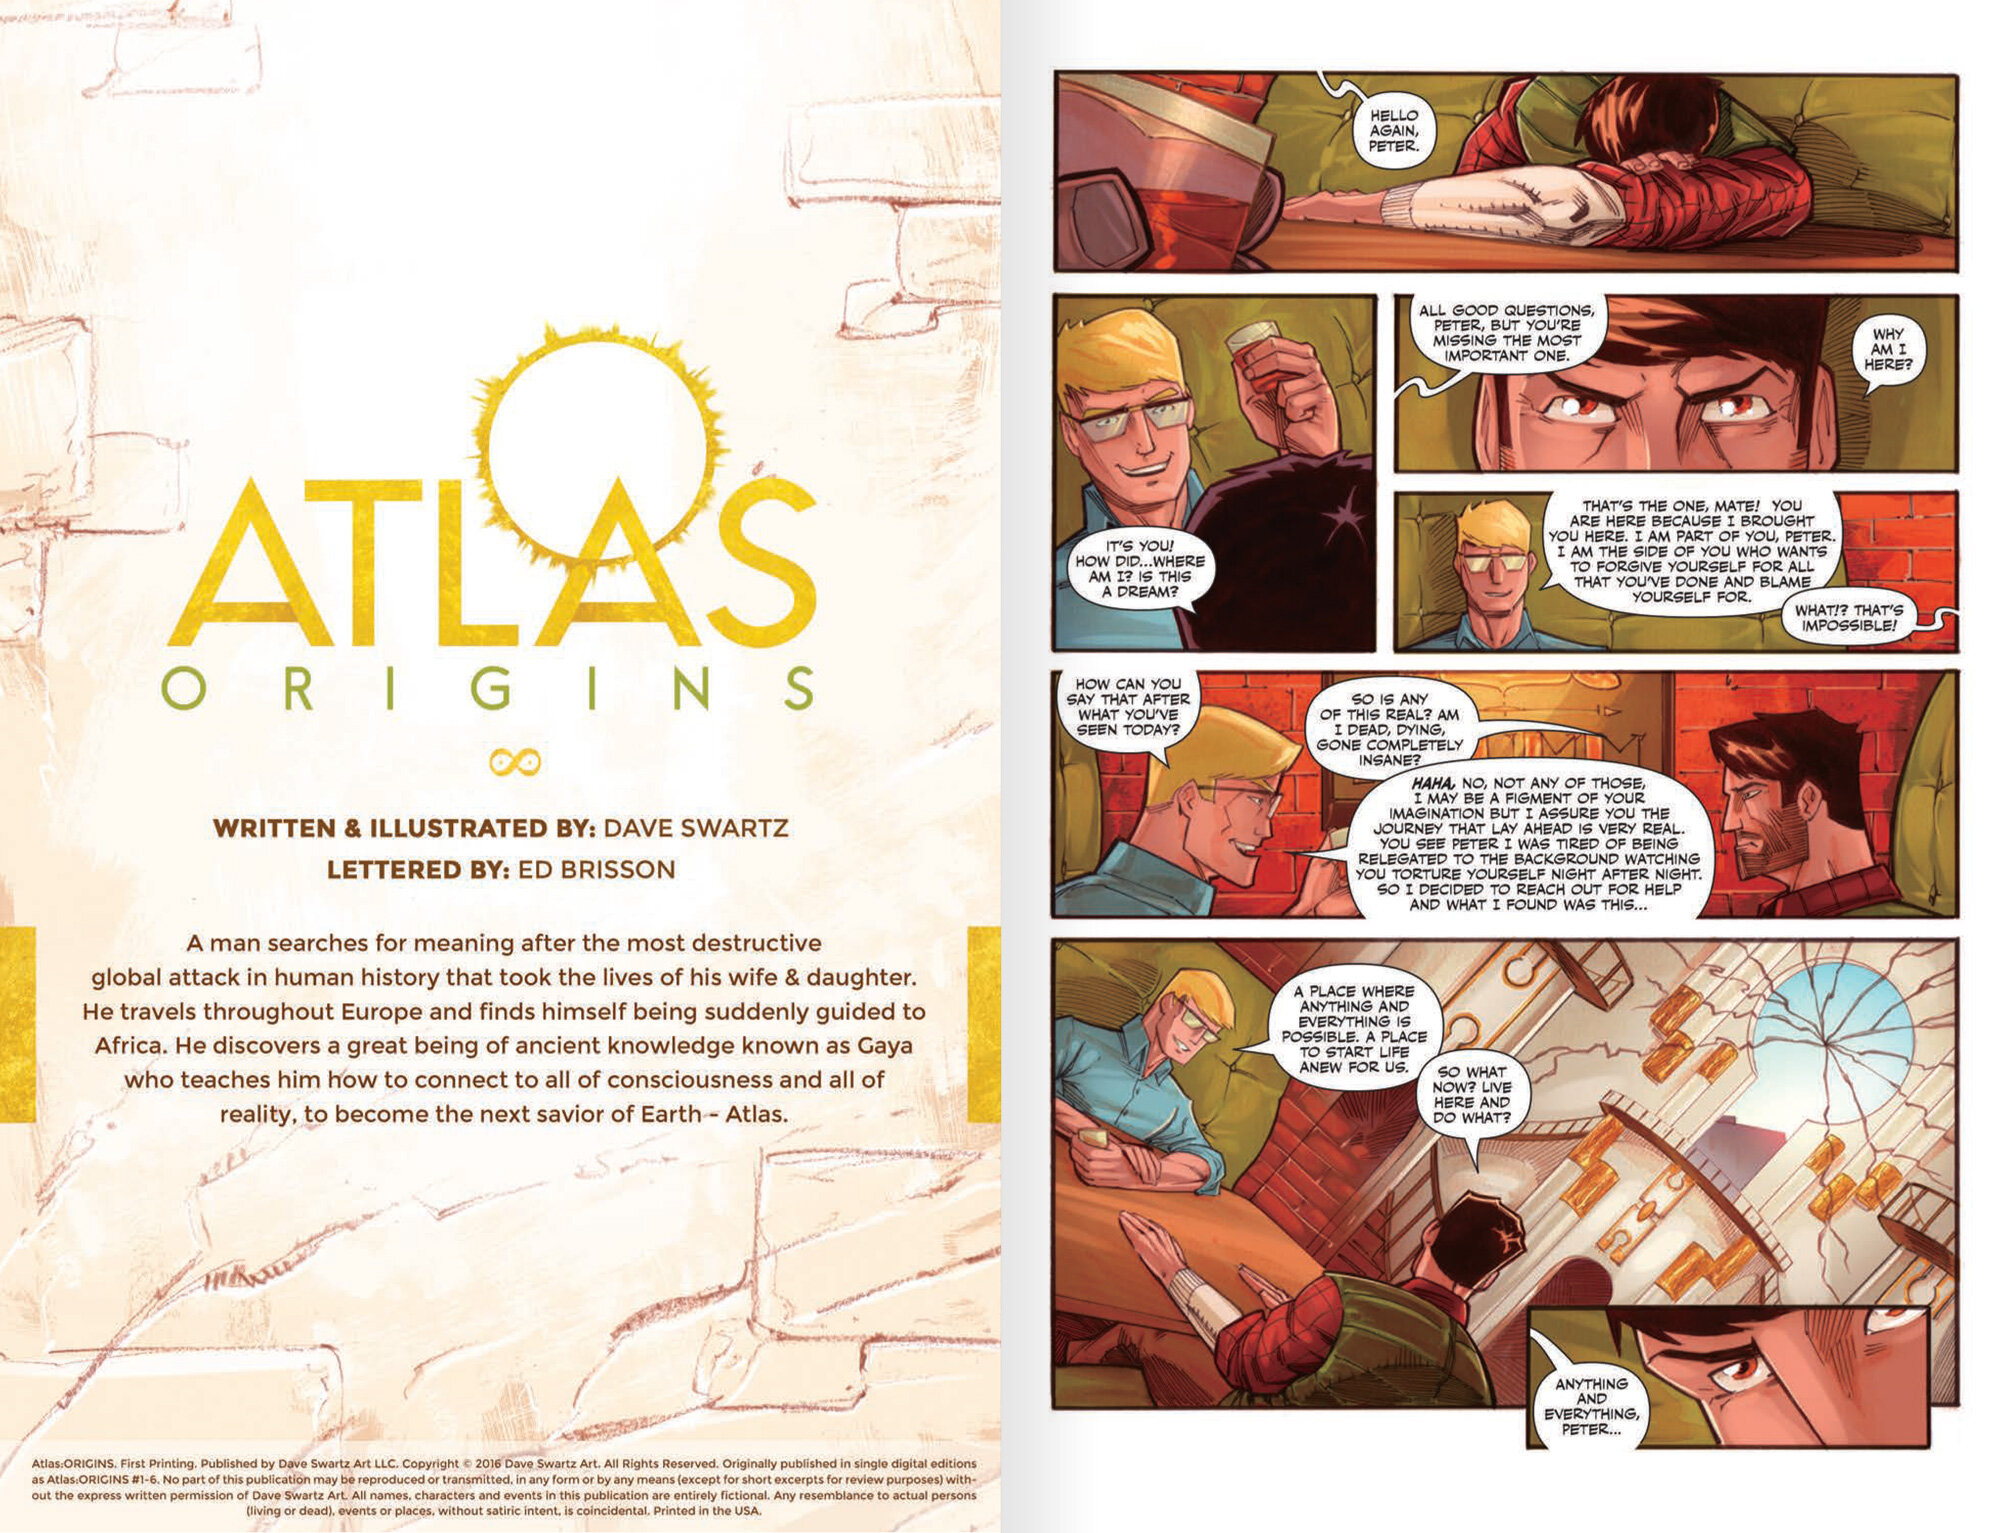 Atlas:ORIGINS Page 1 - Dave Swartz Art